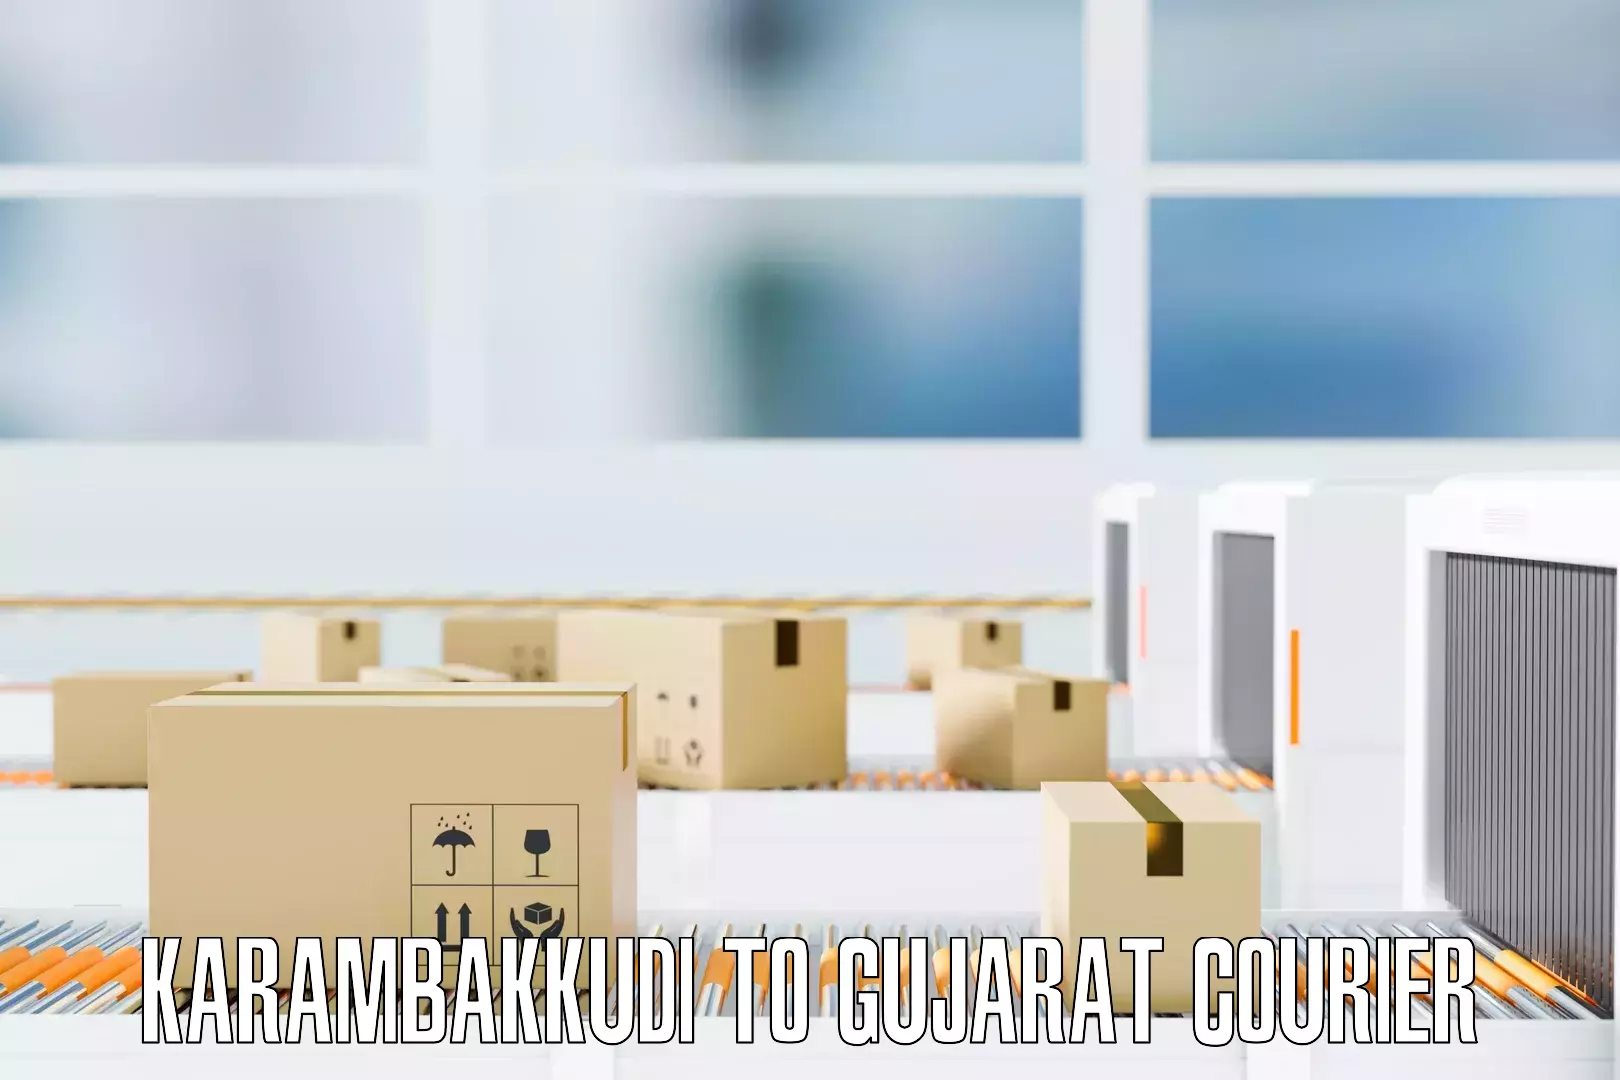 Expert furniture movers Karambakkudi to Gujarat